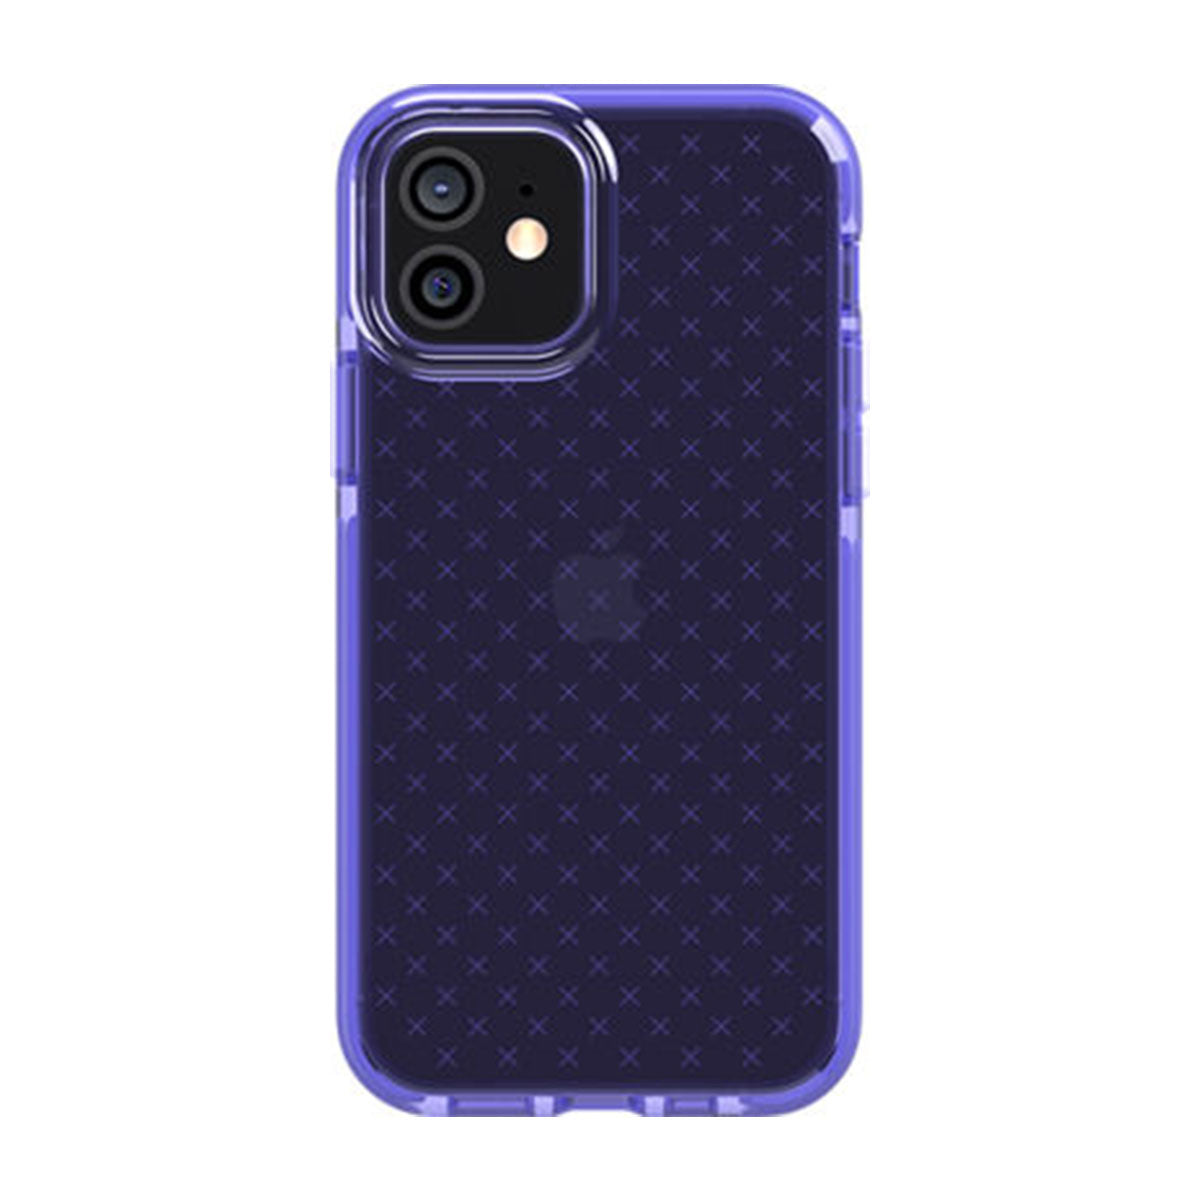 Tech 21 Evo Check For iPhone 12 Pro - Lavender